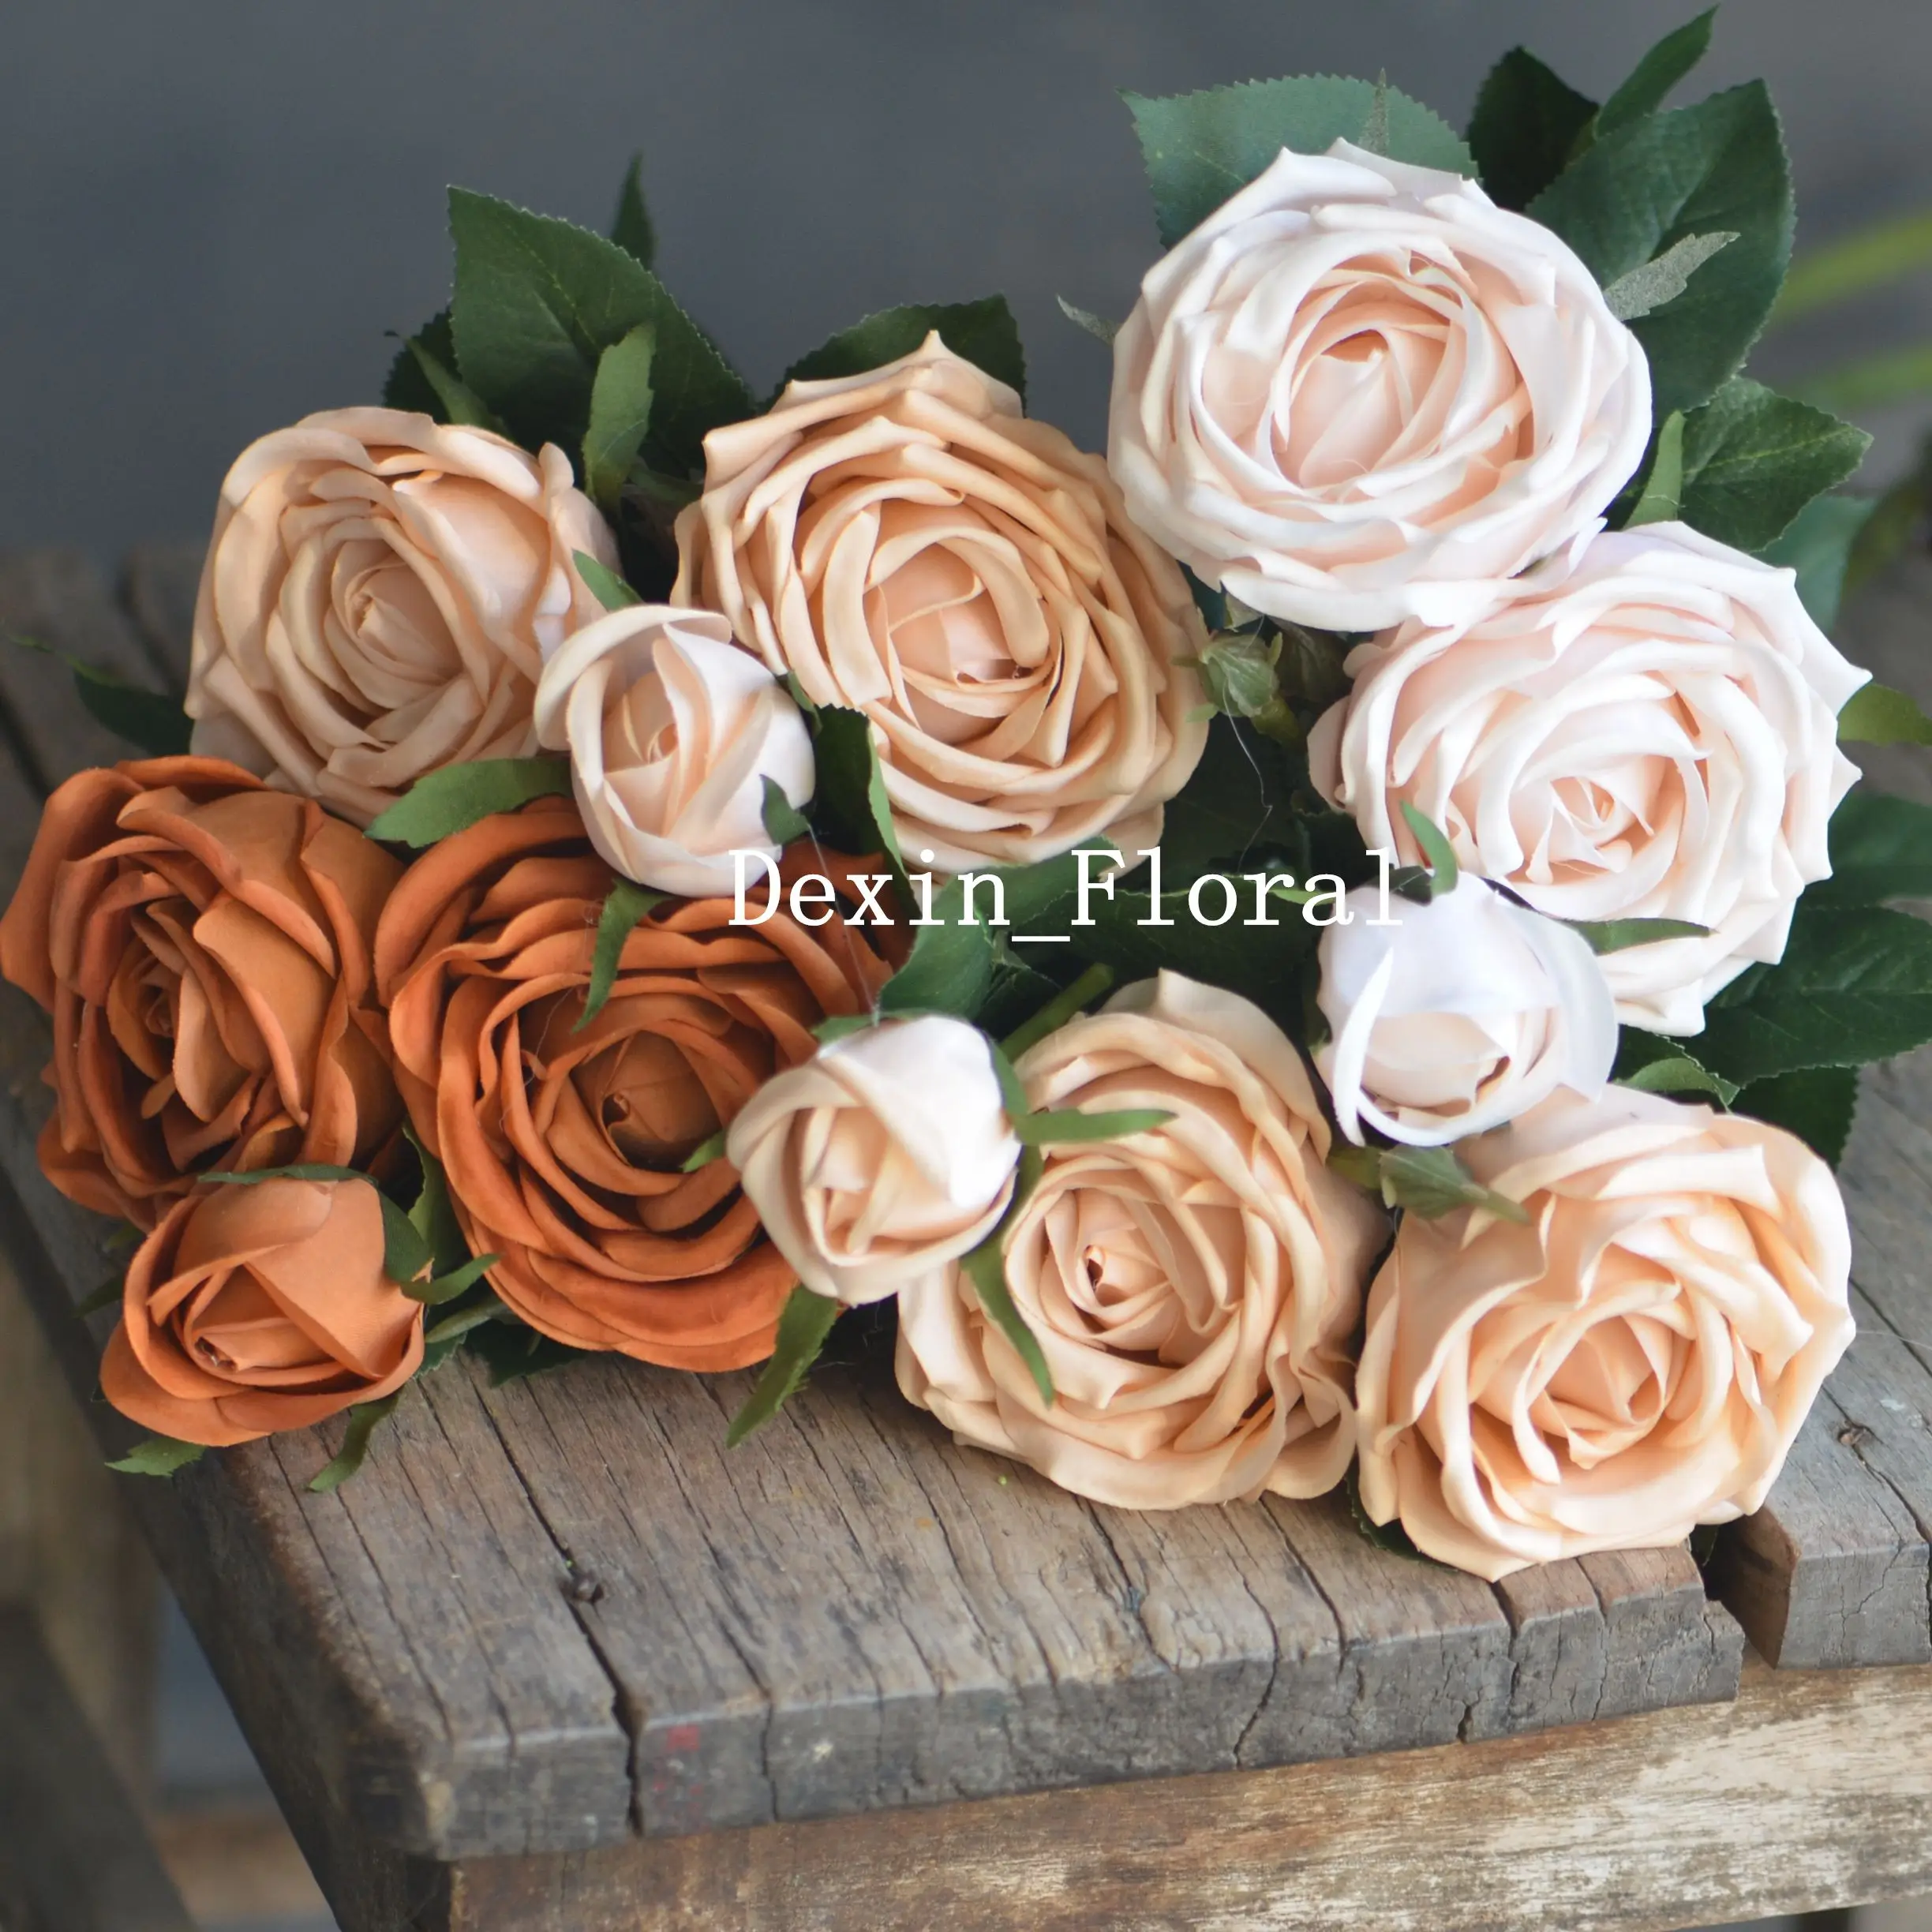 

Цвета Morandi, бледные румяна, сгоревшие оранжевые садовые розы, настоящие на ощупь розы, искусственные розы, DIY свадебные букеты, винтажные цве...